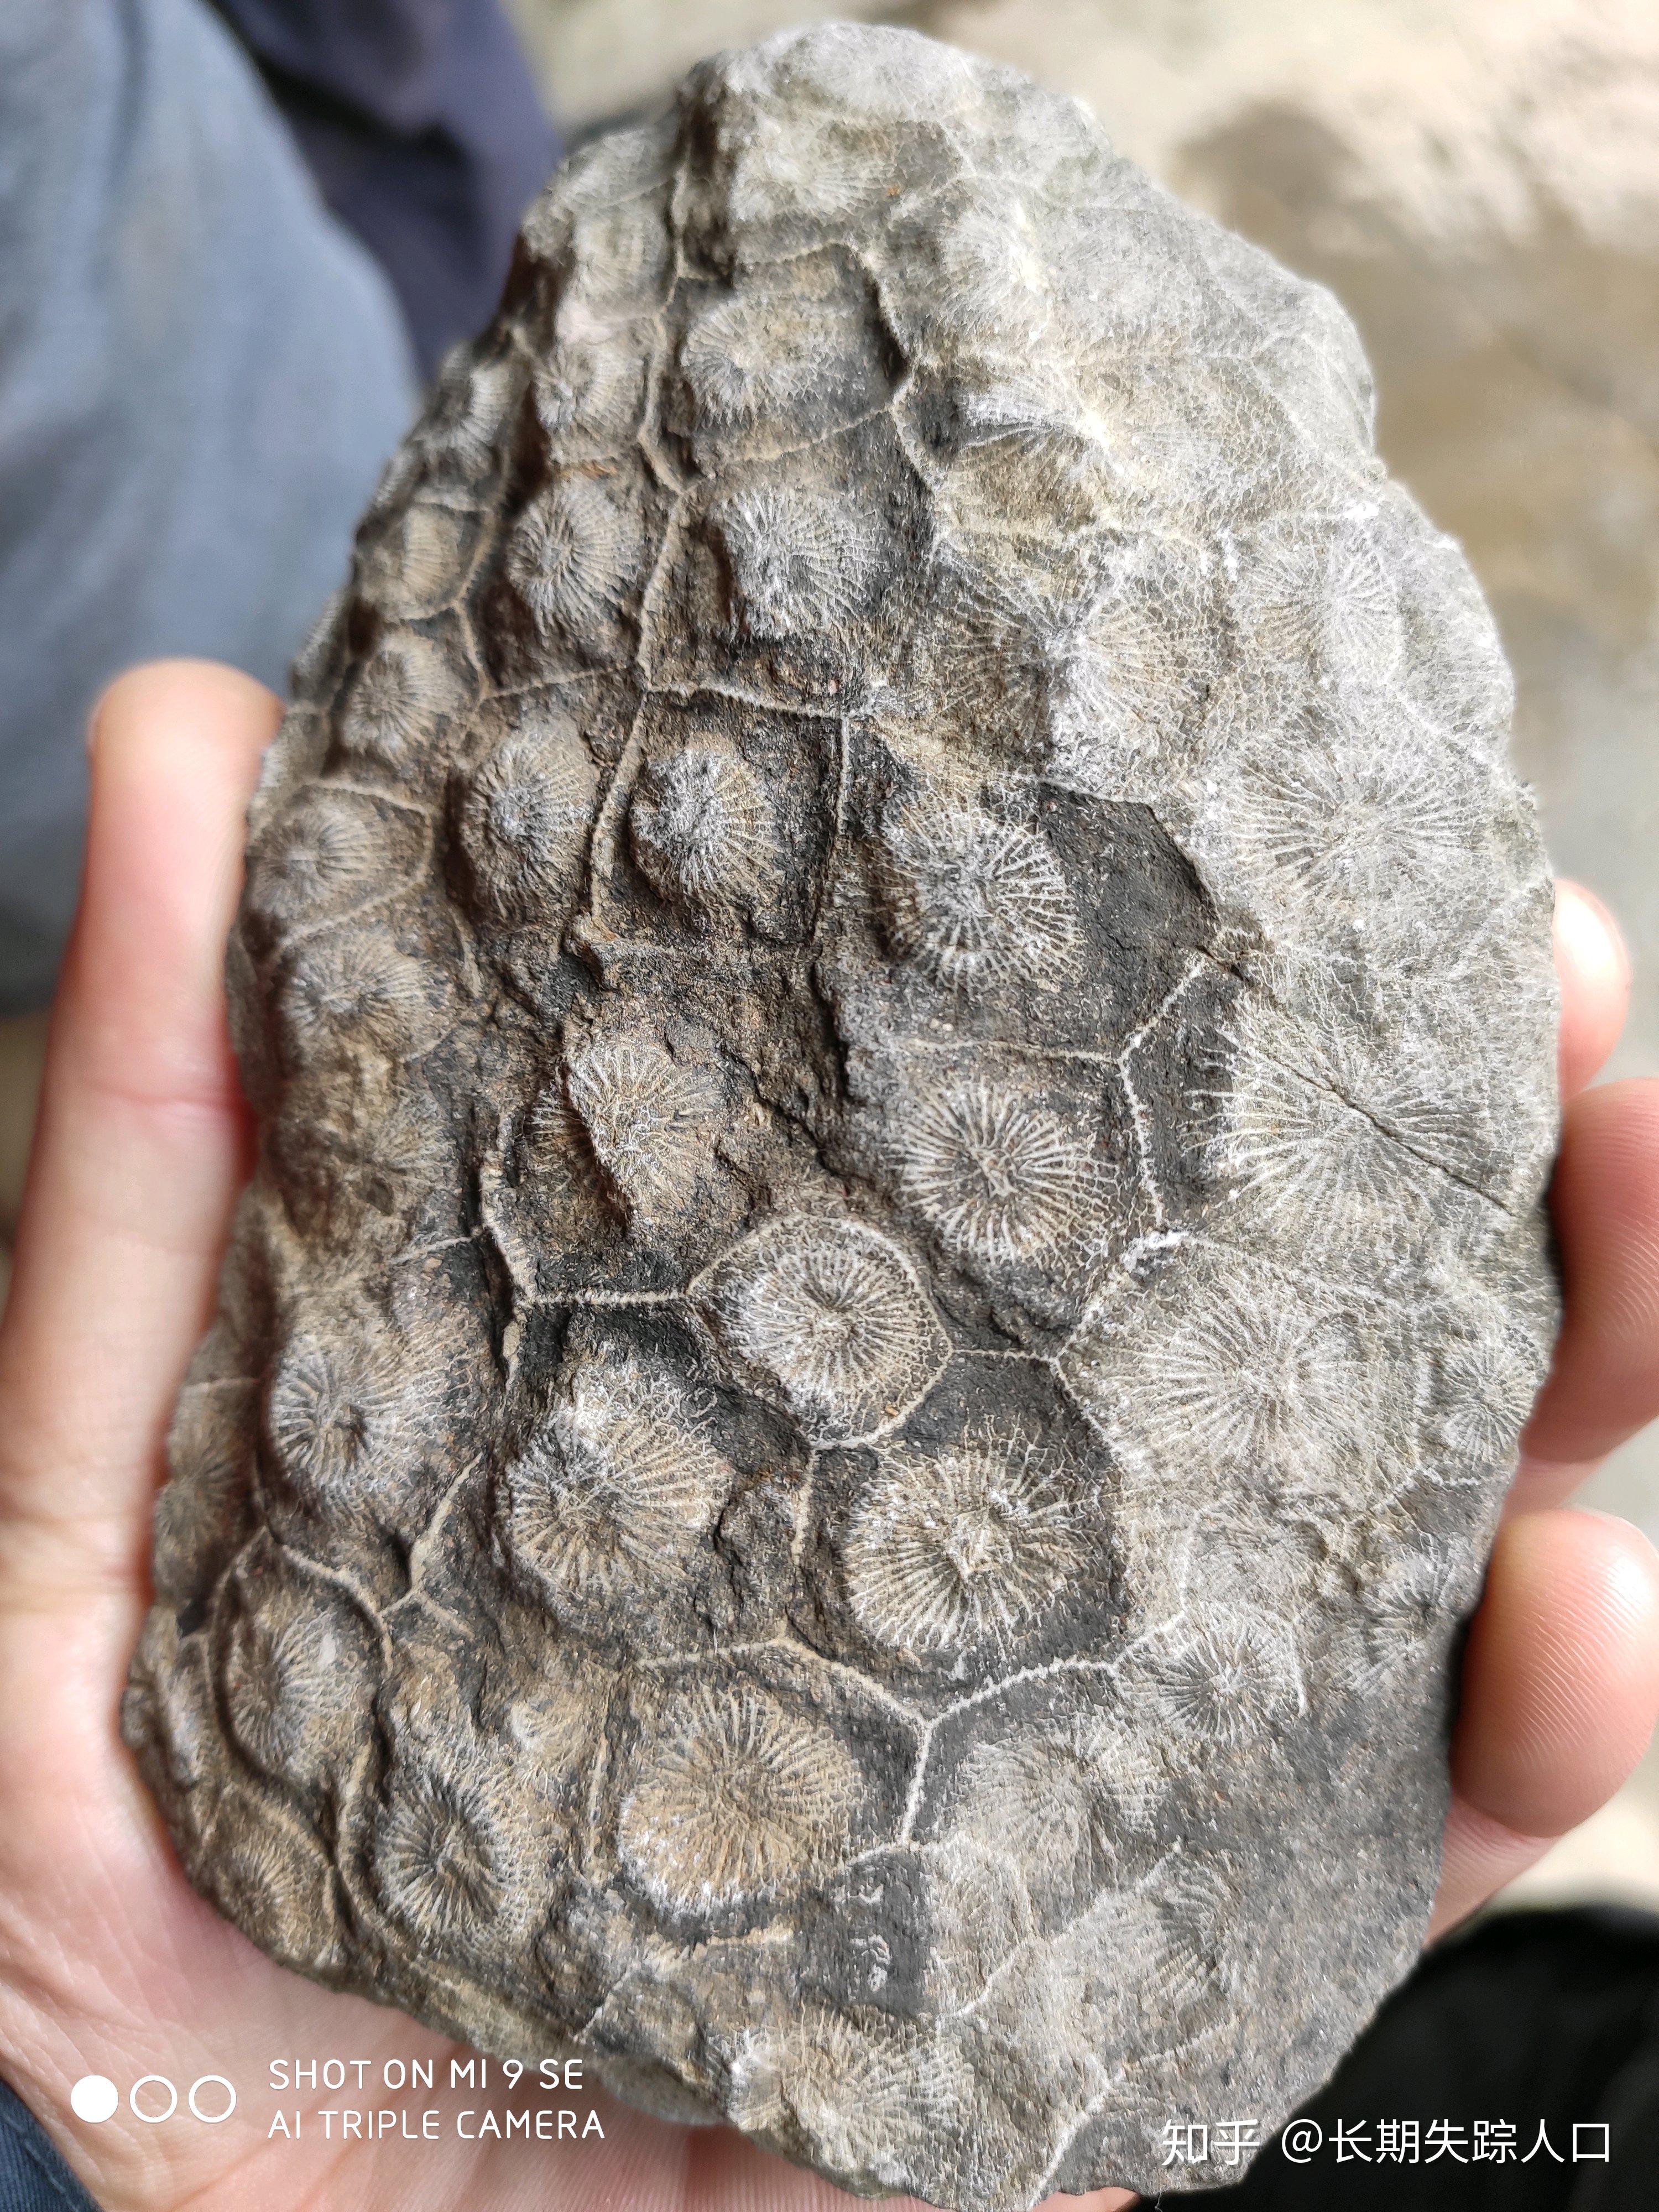 真正的古代螺旋蝸牛化石的石化殼 照片背景圖桌布圖片免費下載 - Pngtree